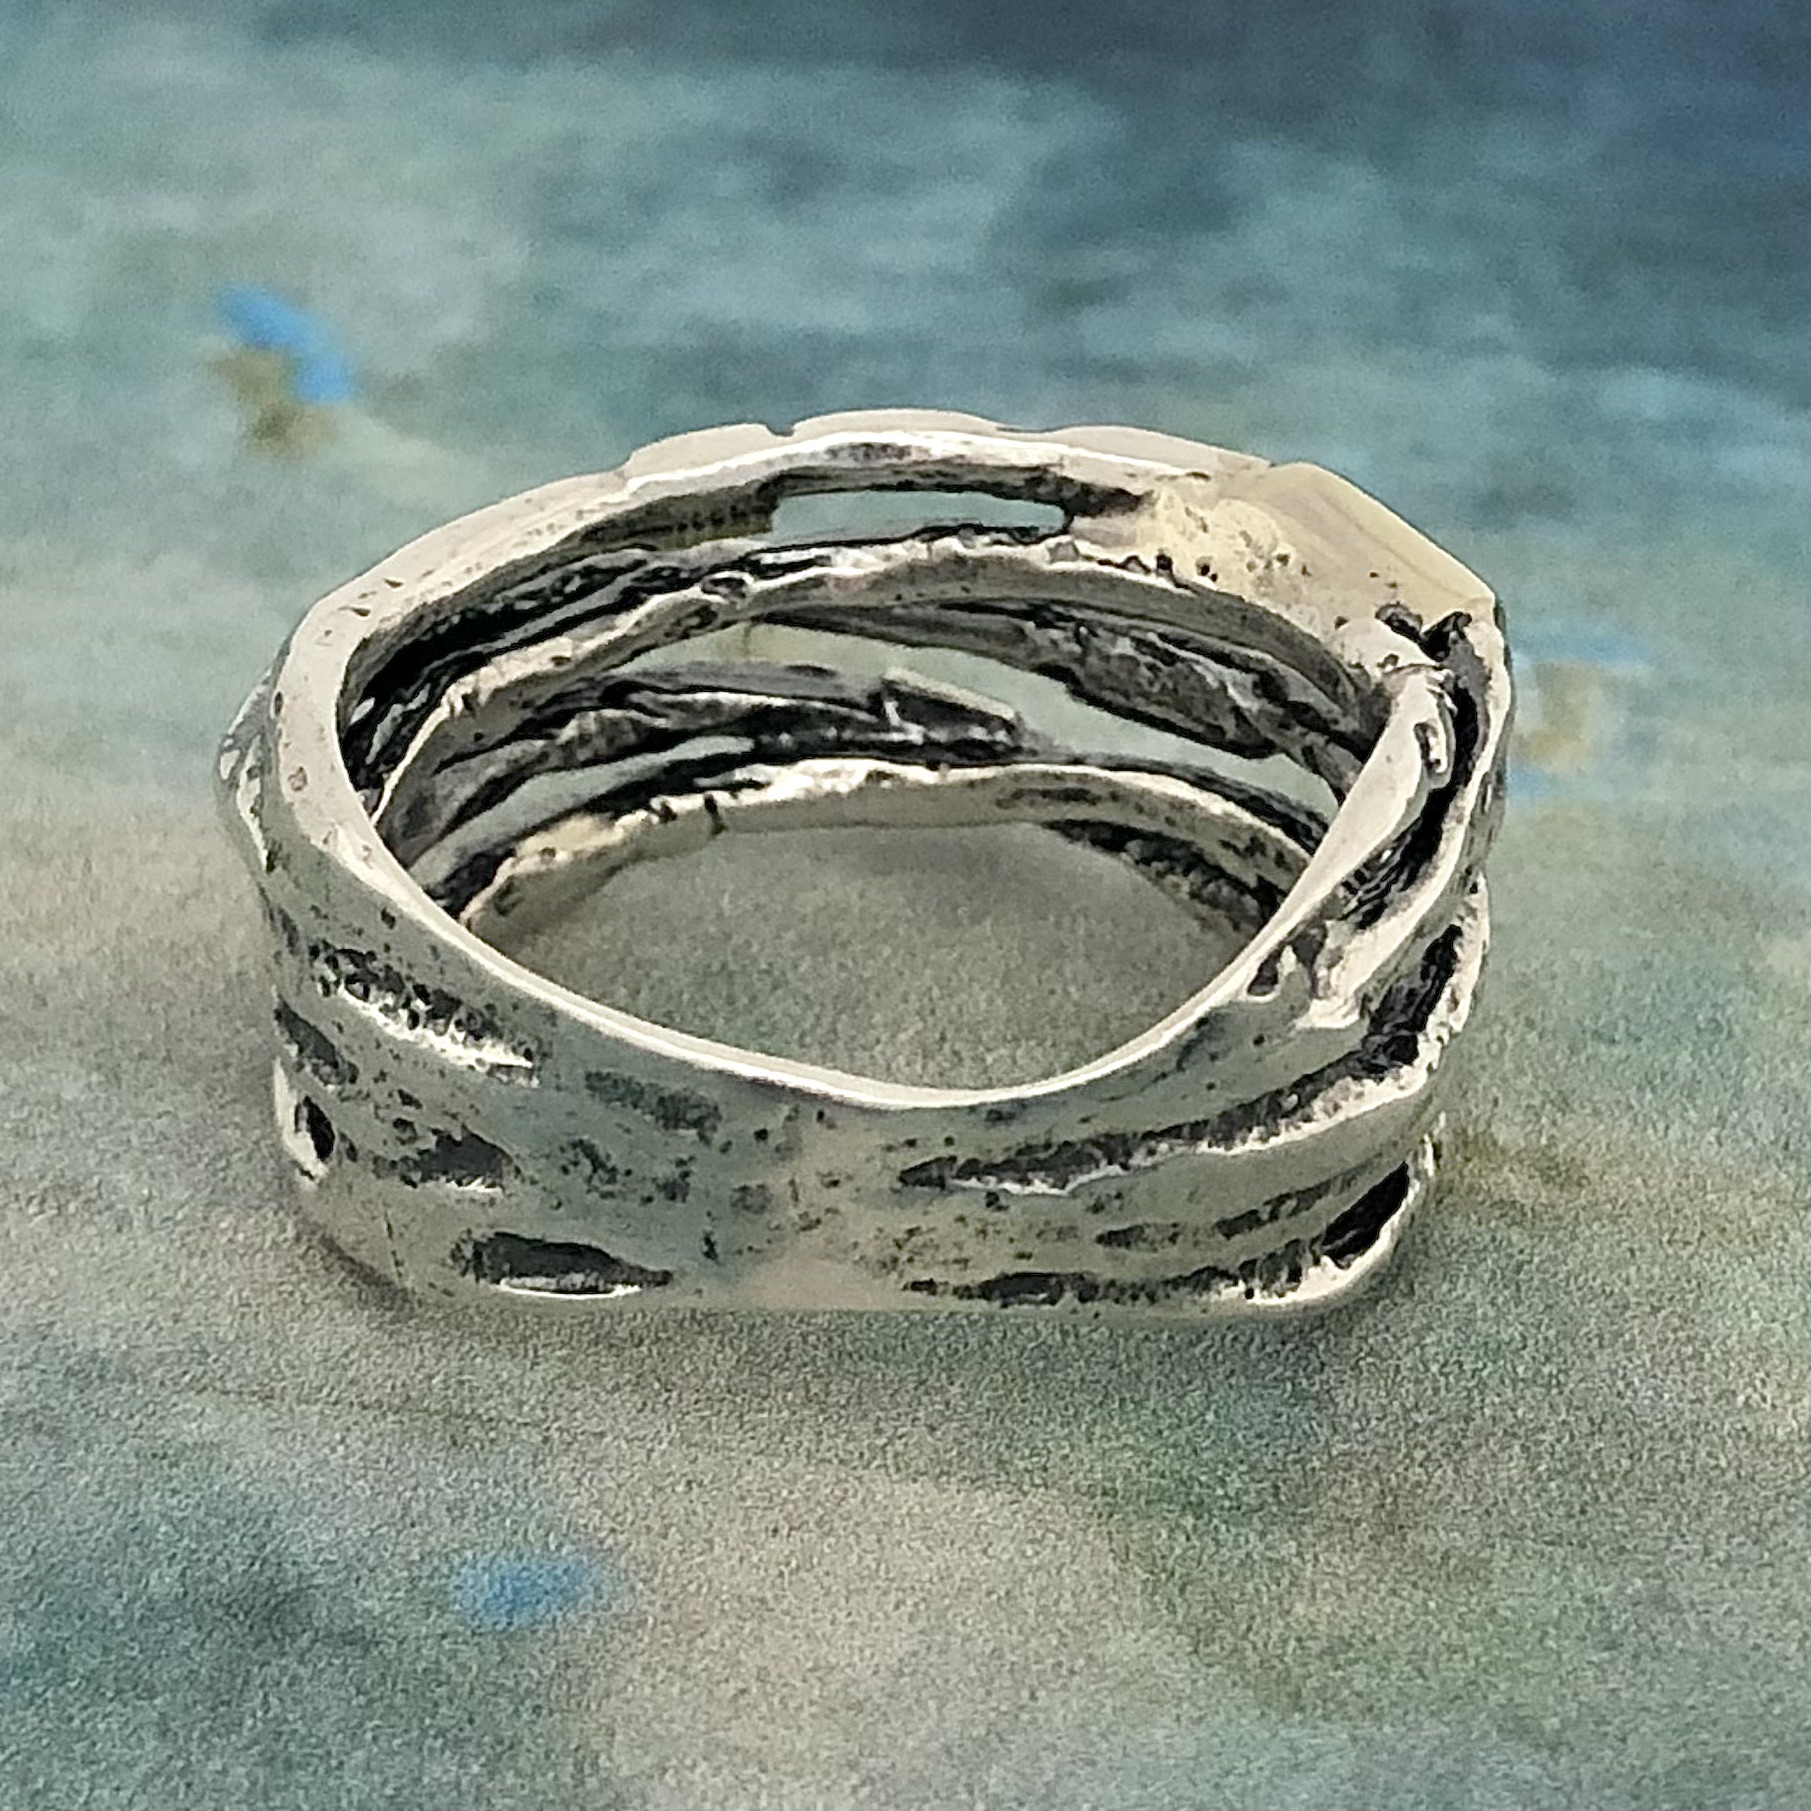 Jacqueline - Mycket snygg ring med detaljer i 9 K guld